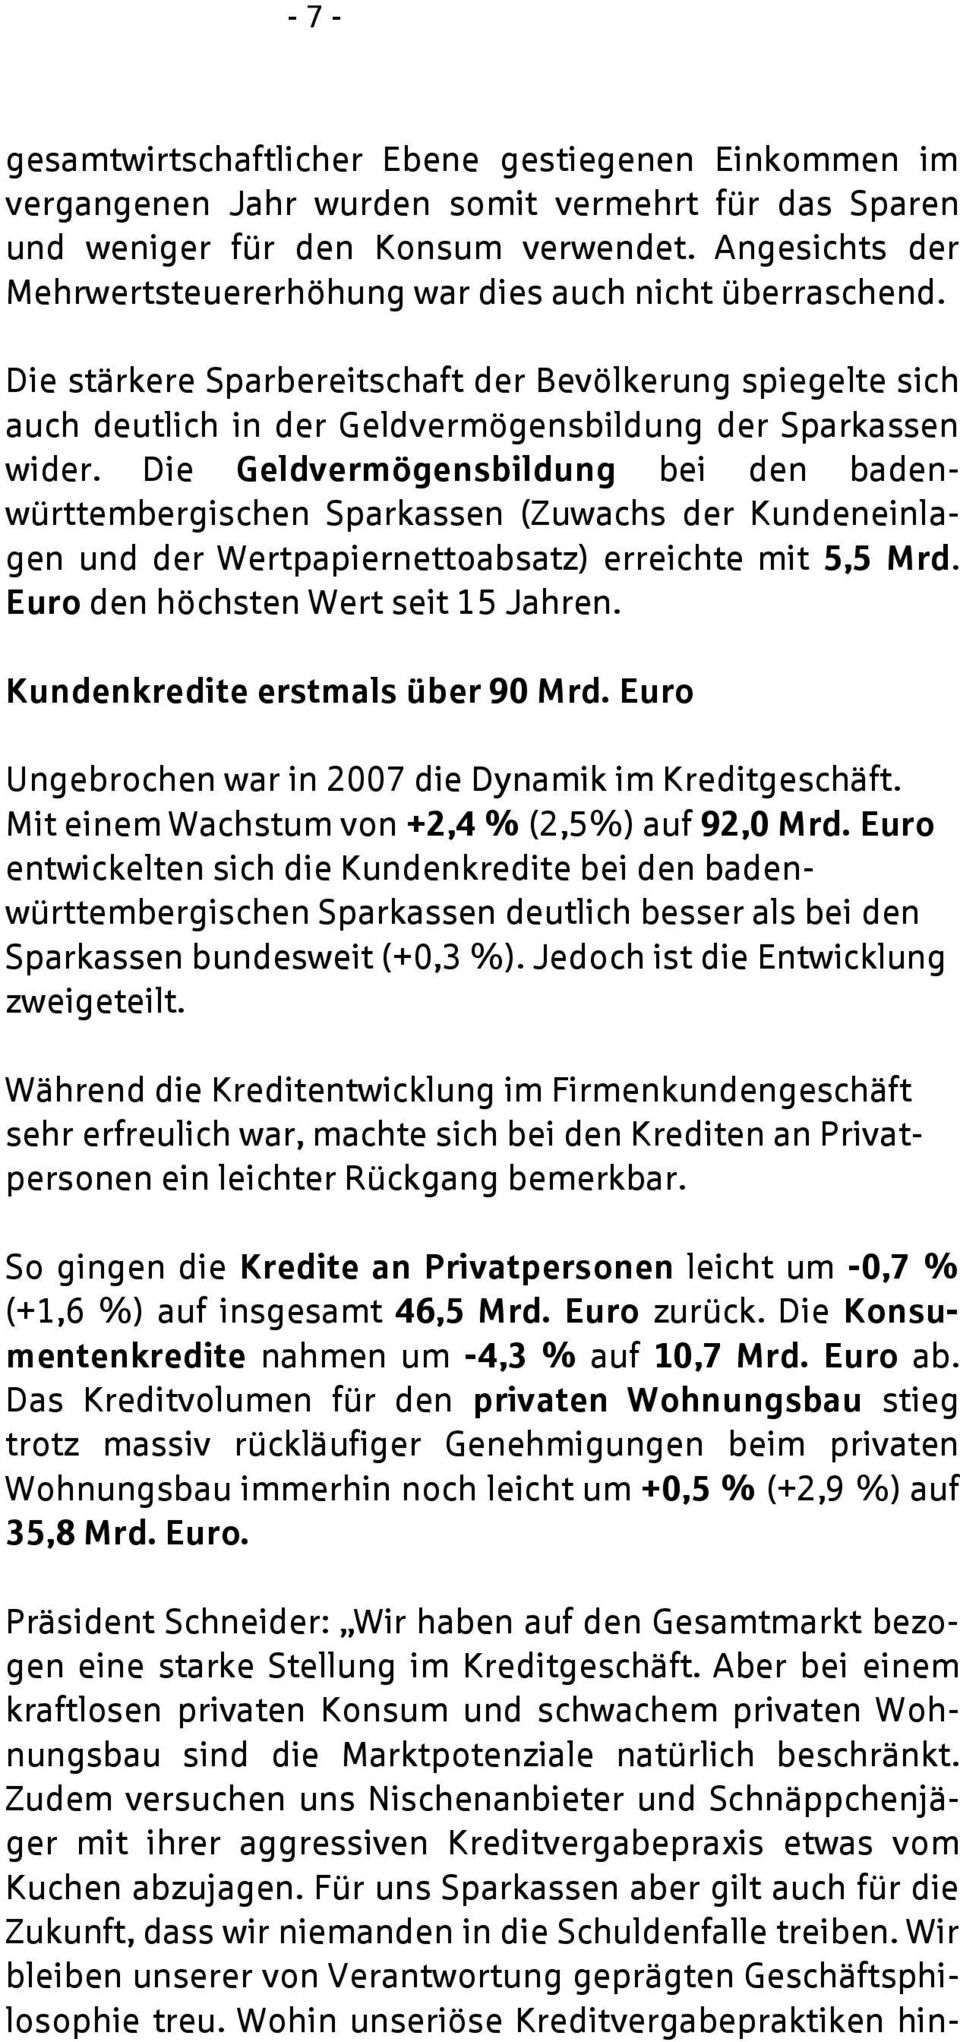 Die Geldvermögensbildung bei den badenwürttembergischen Sparkassen (Zuwachs der Kundeneinlagen und der Wertpapiernettoabsatz) erreichte mit 5,5 Mrd. Euro den höchsten Wert seit 15 Jahren.